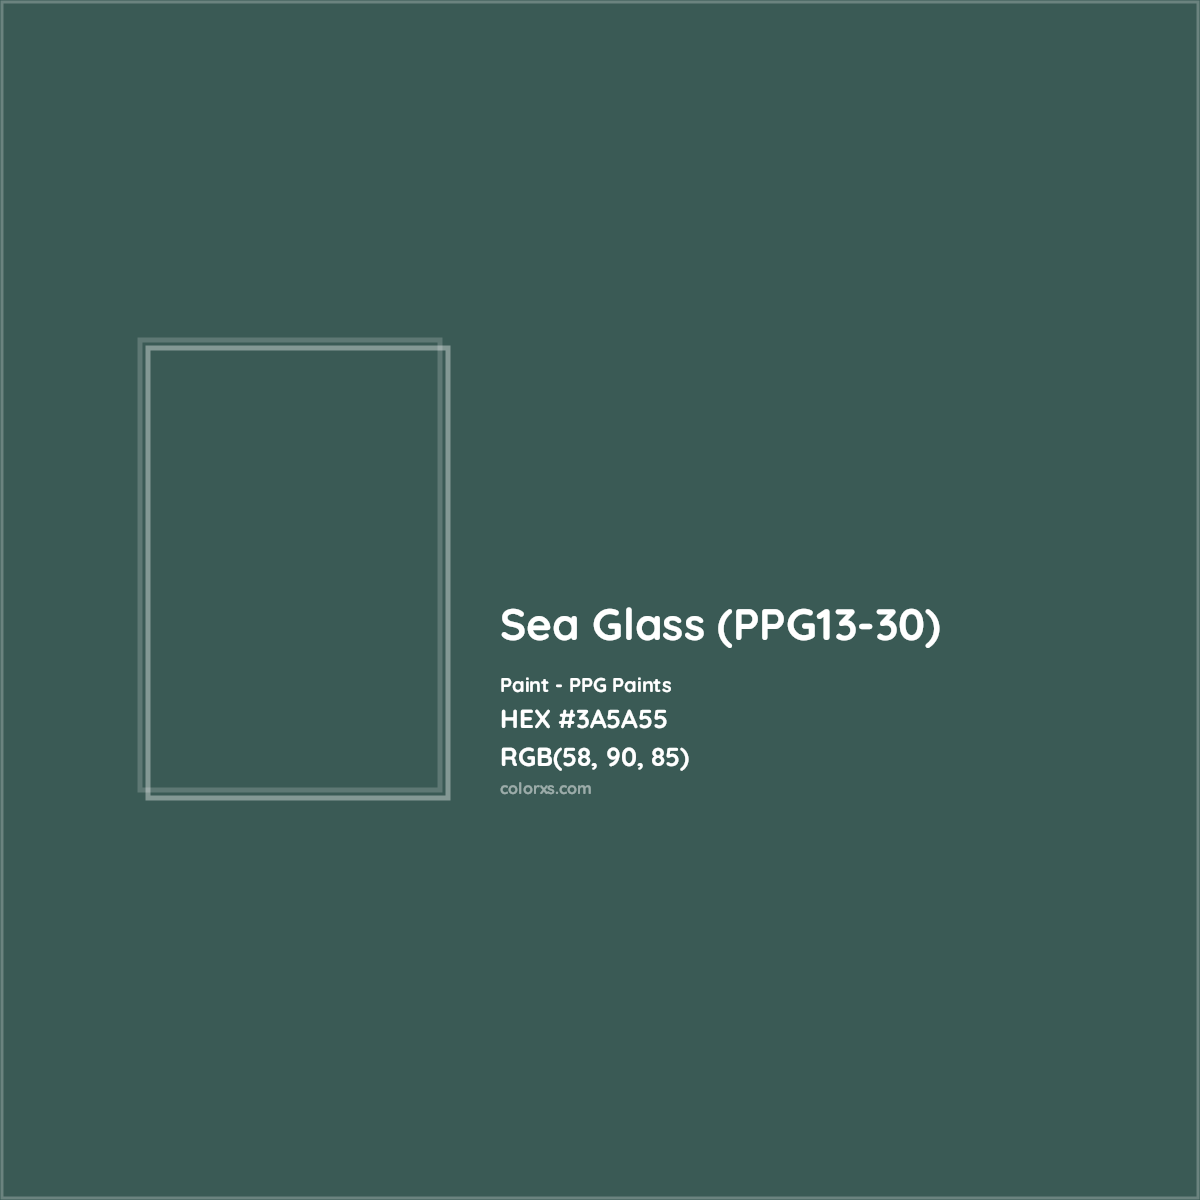 HEX #3A5A55 Sea Glass (PPG13-30) Paint PPG Paints - Color Code